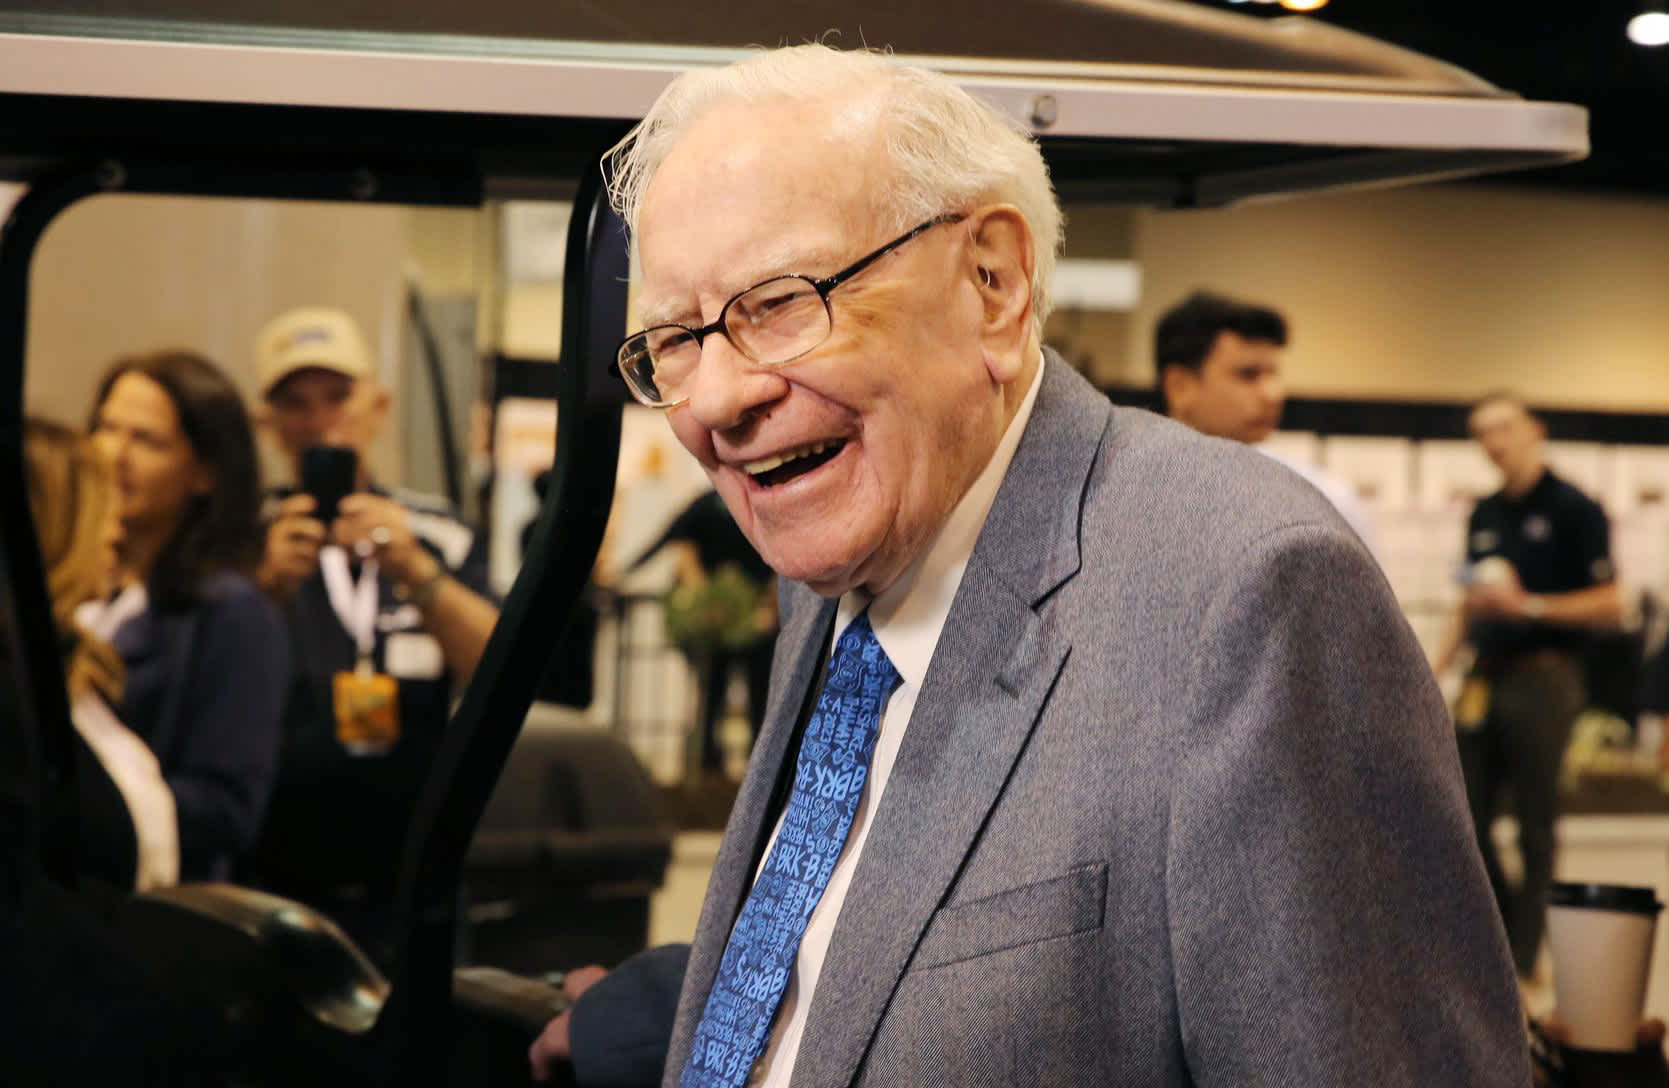 Saham Berkshire melonjak setelah membukukan keuntungan besar karena nilai grup Buffett mendekati $1 triliun